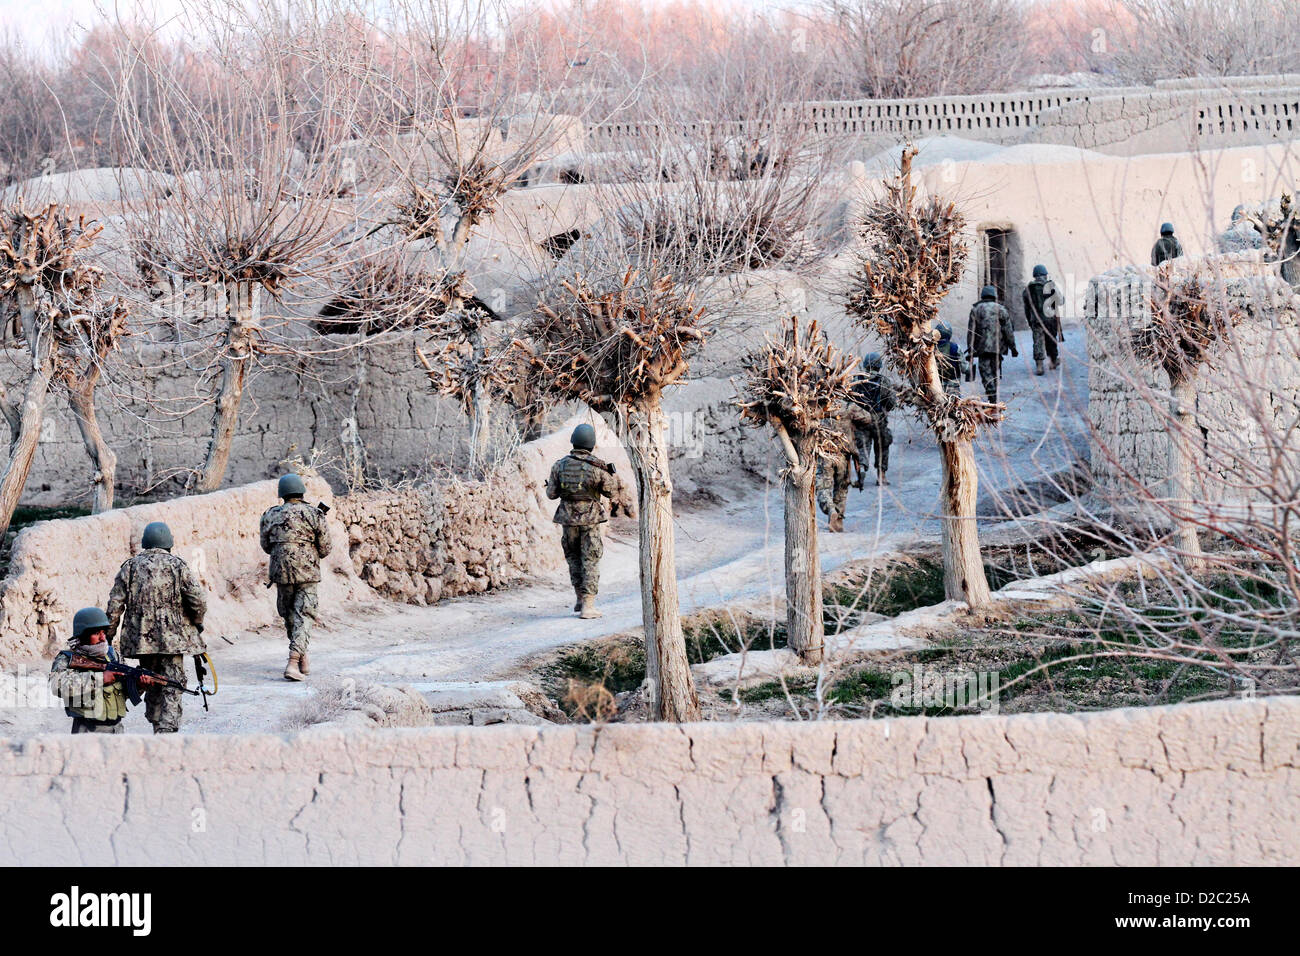 Les soldats de l'Armée nationale afghane au cours d'une opération de patrouille de sécurité Janvier 19, 2-13 dans la province de Farah, l'Afghanistan. Banque D'Images